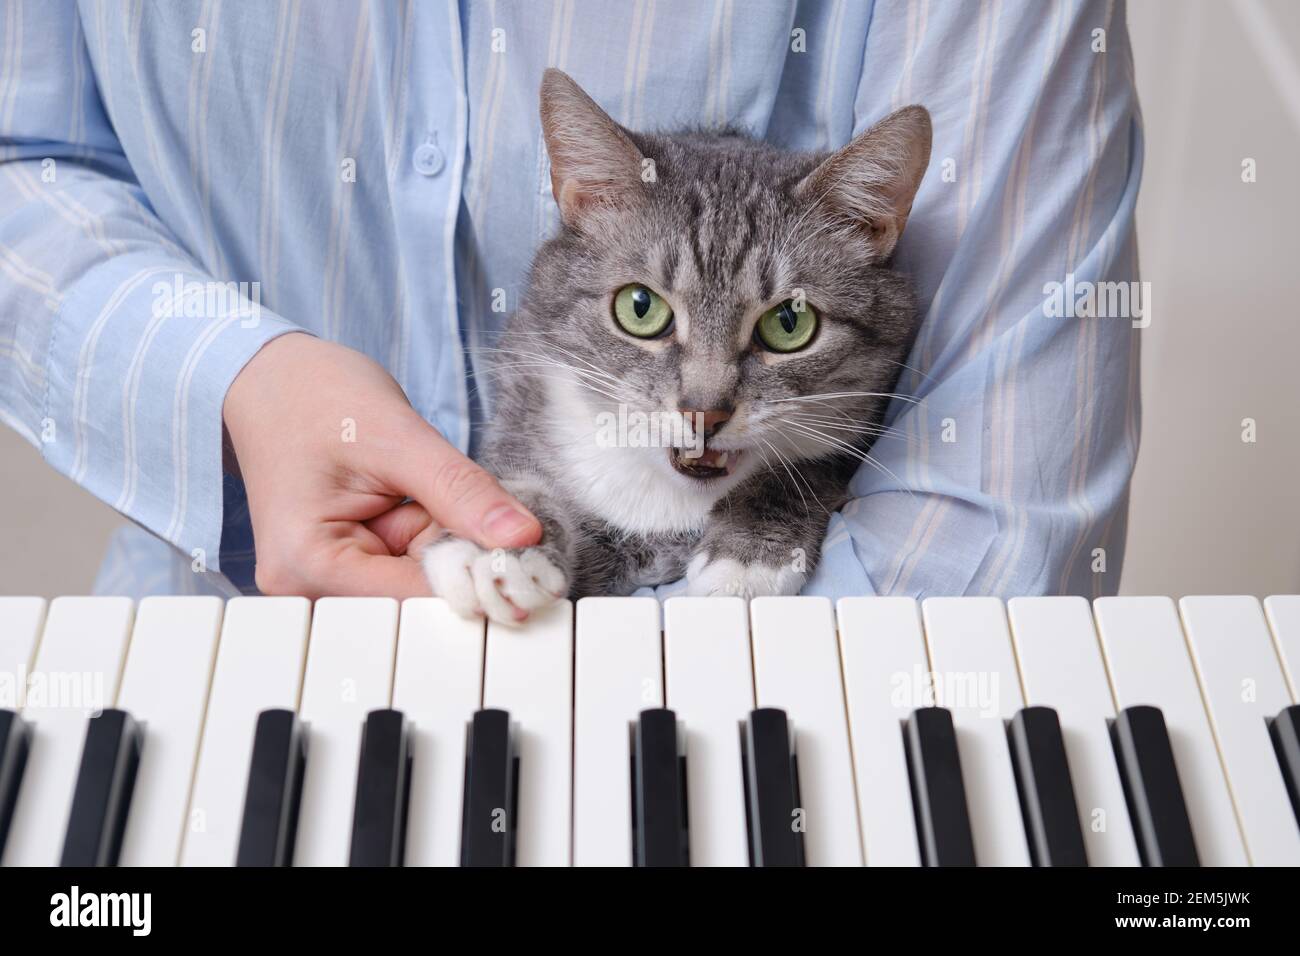 Die Katze singt und drückt eine Taste auf einer elektronischen Klavier,  während sie einer Musikerin beim Spielen helfen Stockfotografie - Alamy